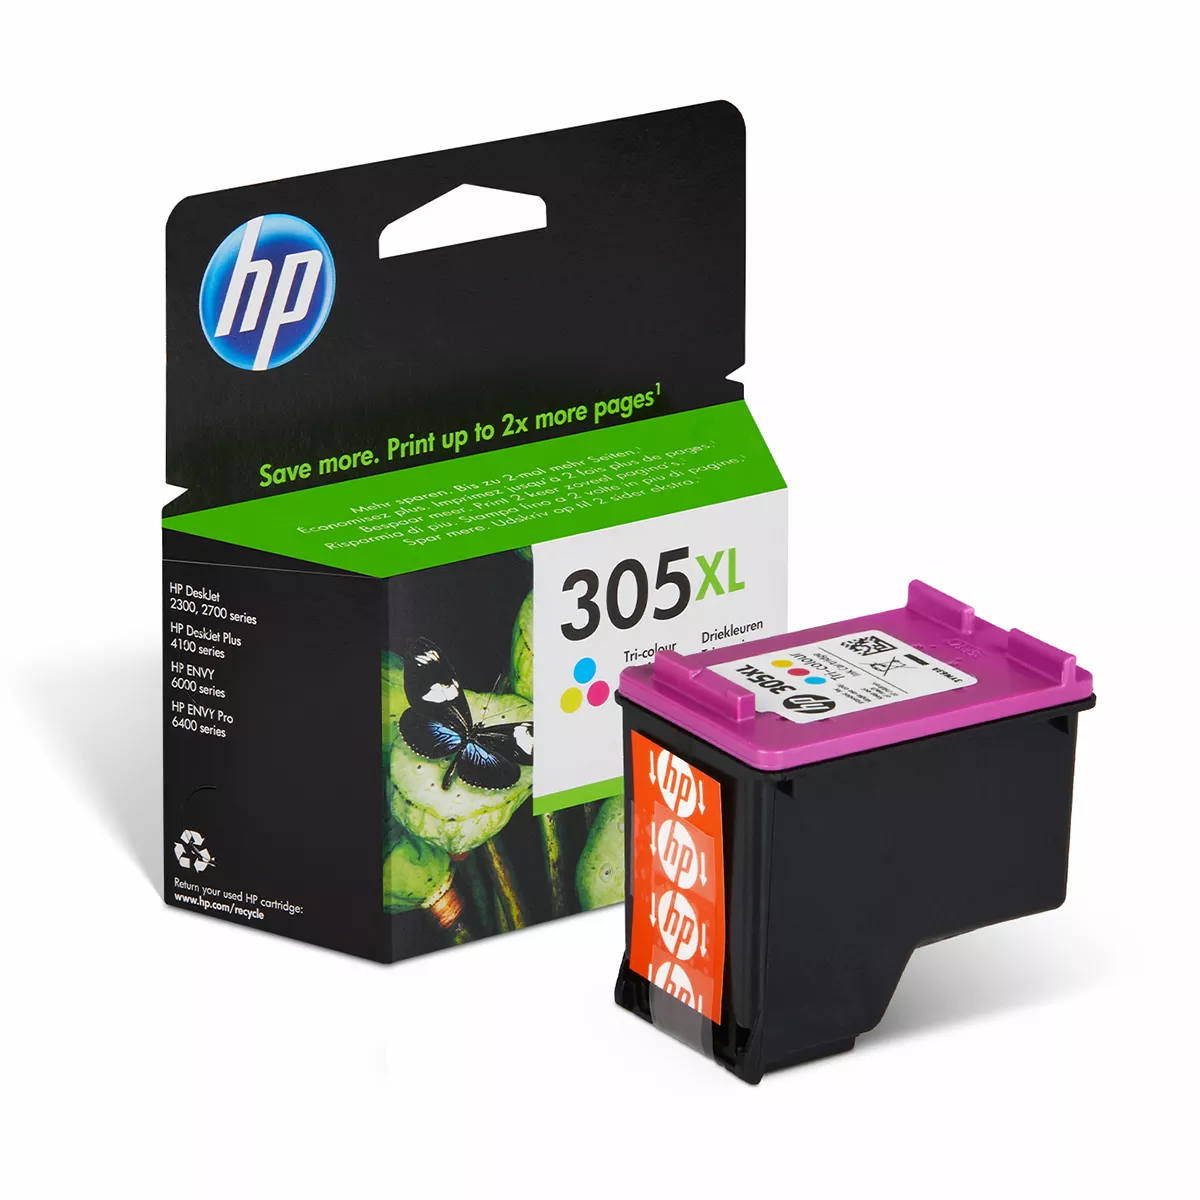 HP XL Druckerpatrone '305 XL' farbig 5 ml 200 Seiten